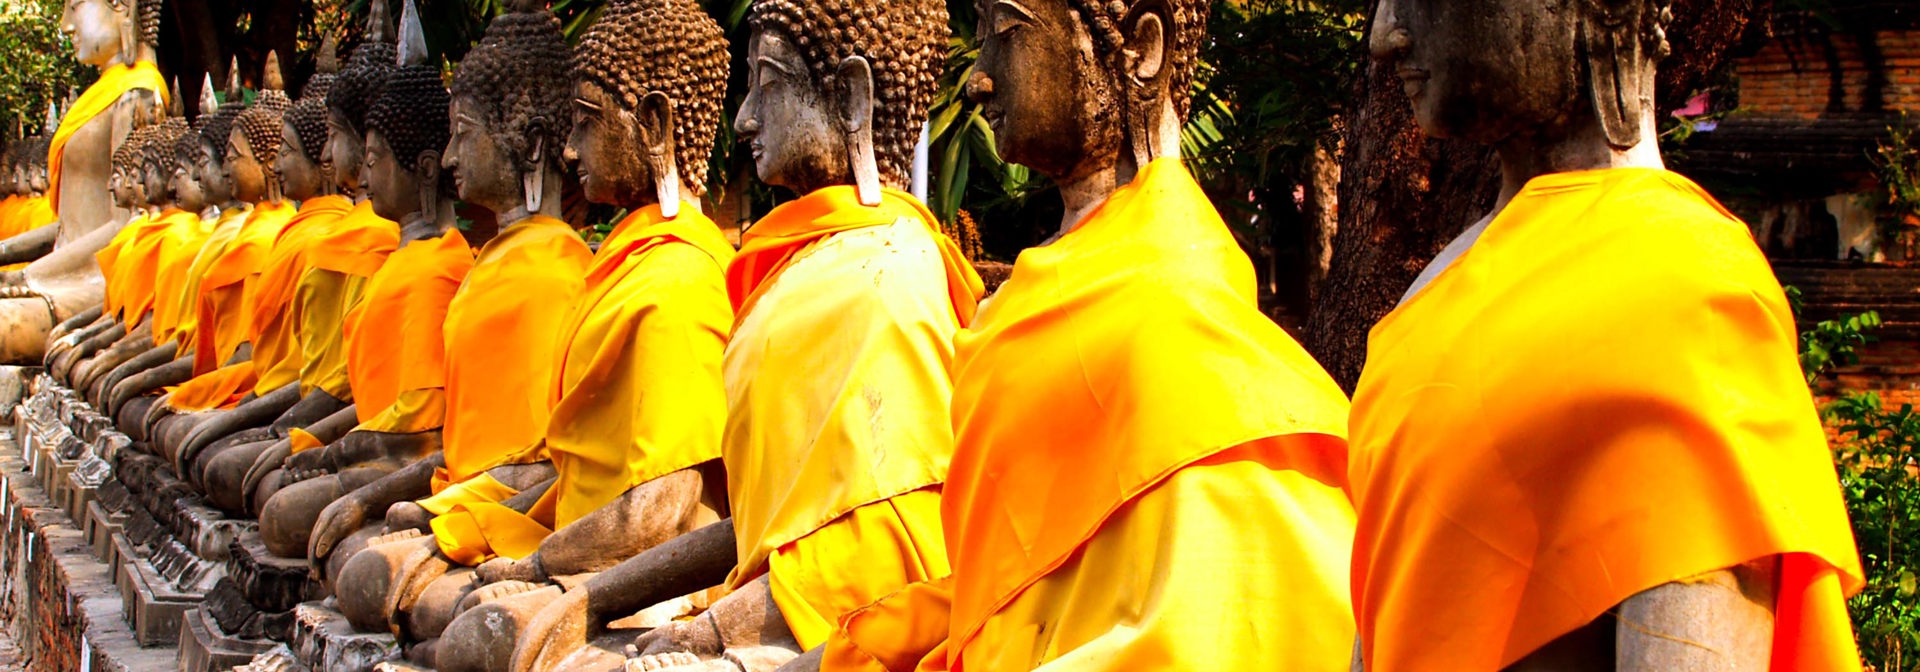 Thailandske stenfigurer af munke med gule koftedragte